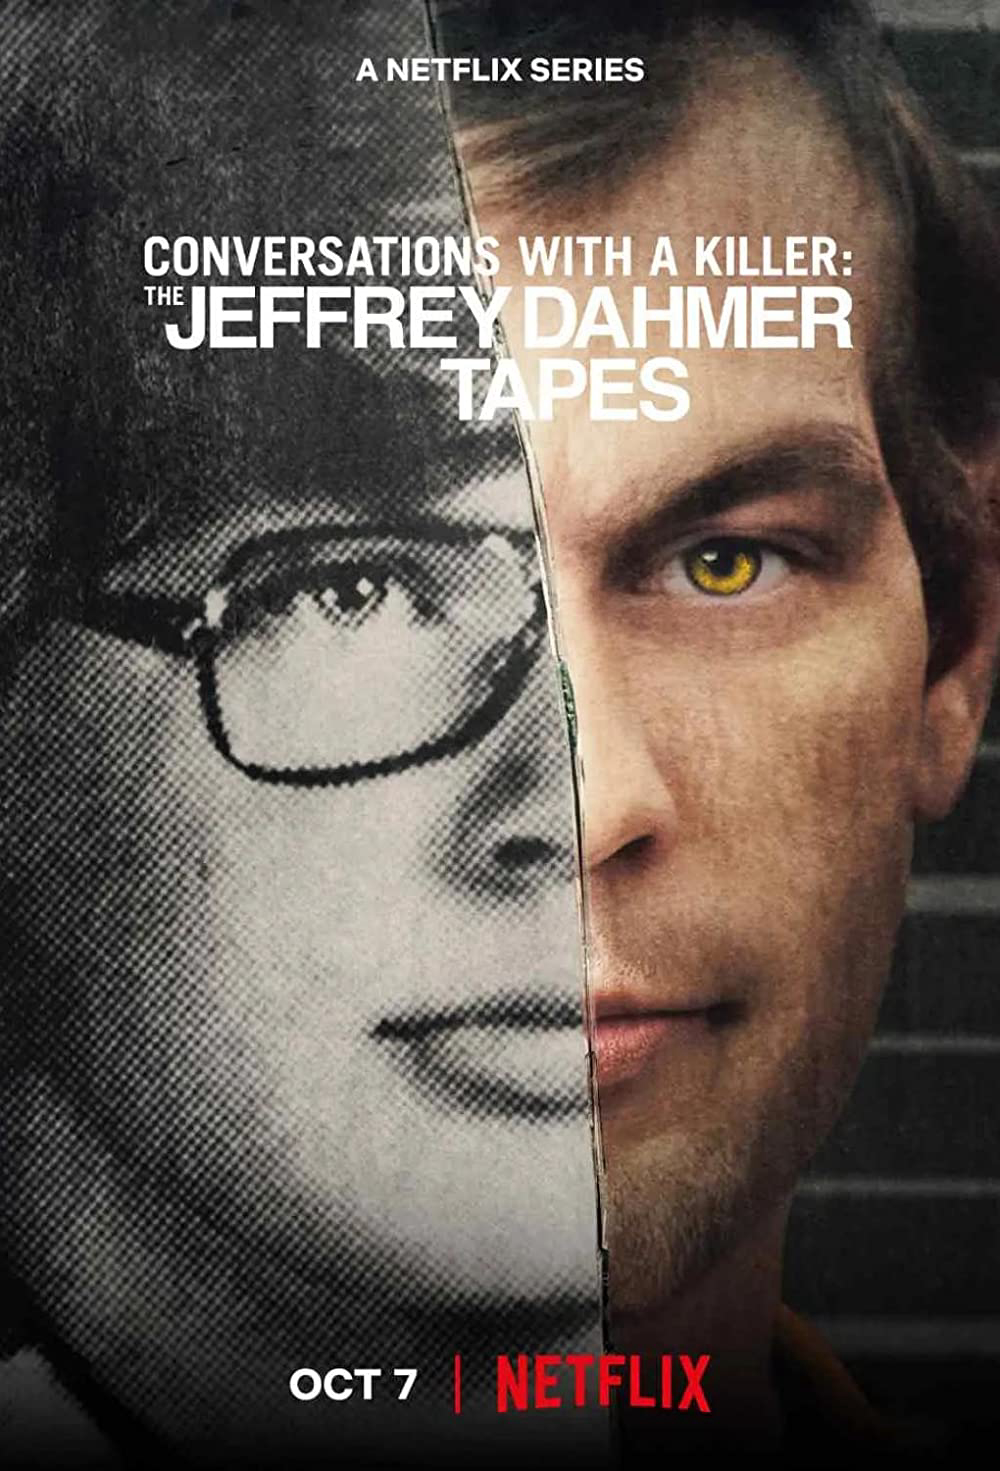 Xem Phim Đối thoại với kẻ sát nhân: Jeffrey Dahmer (Conversations with a Killer: The Jeffrey Dahmer Tapes)